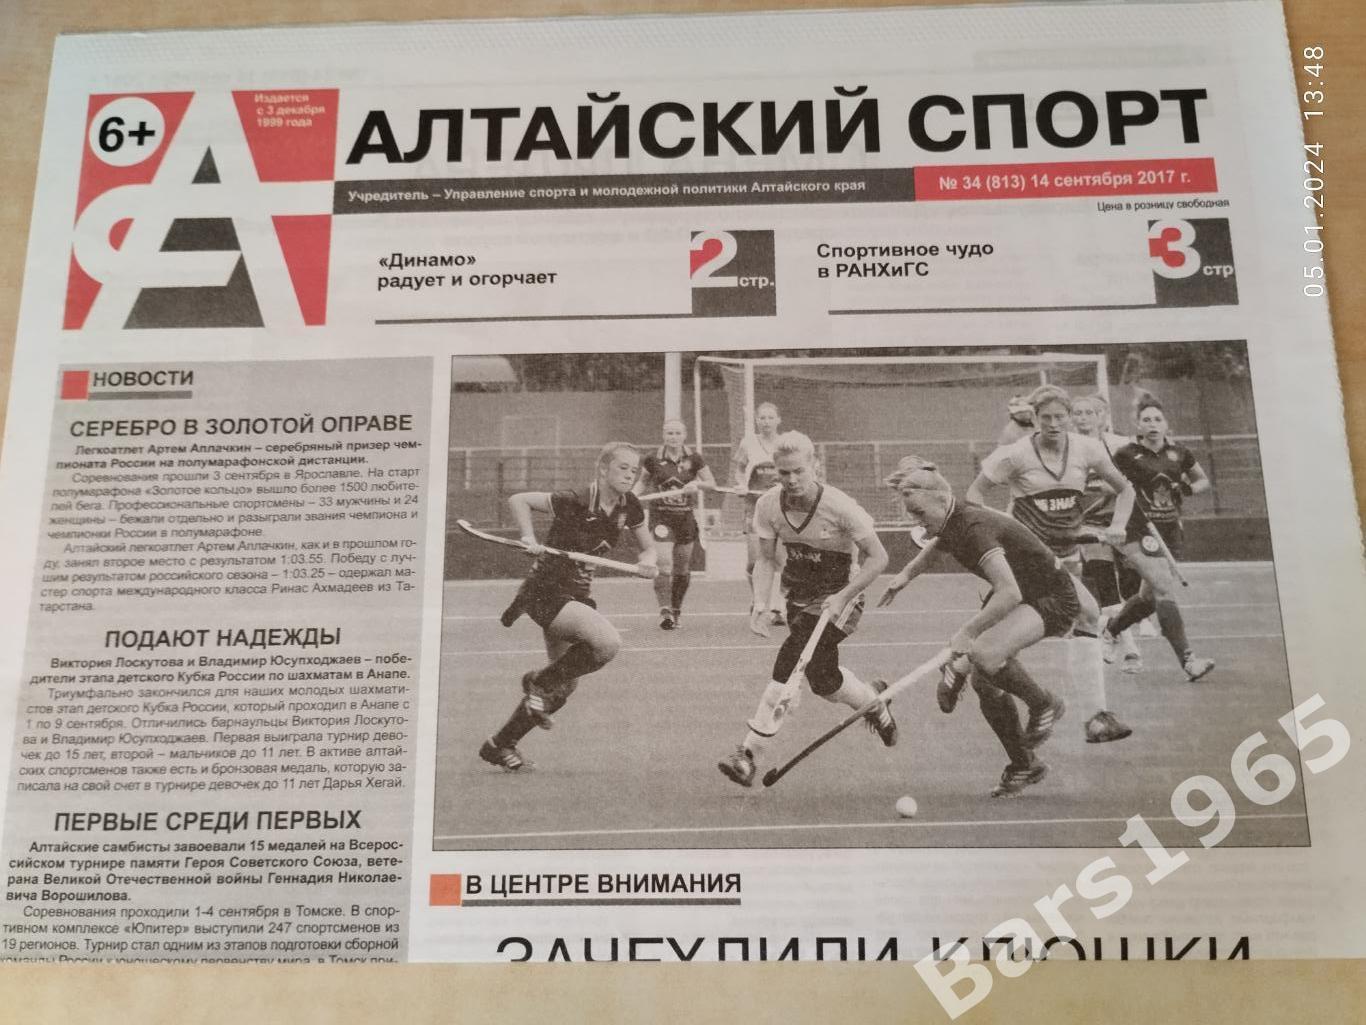 Алтайский спорт № 34 (813) 14 сентября 2017